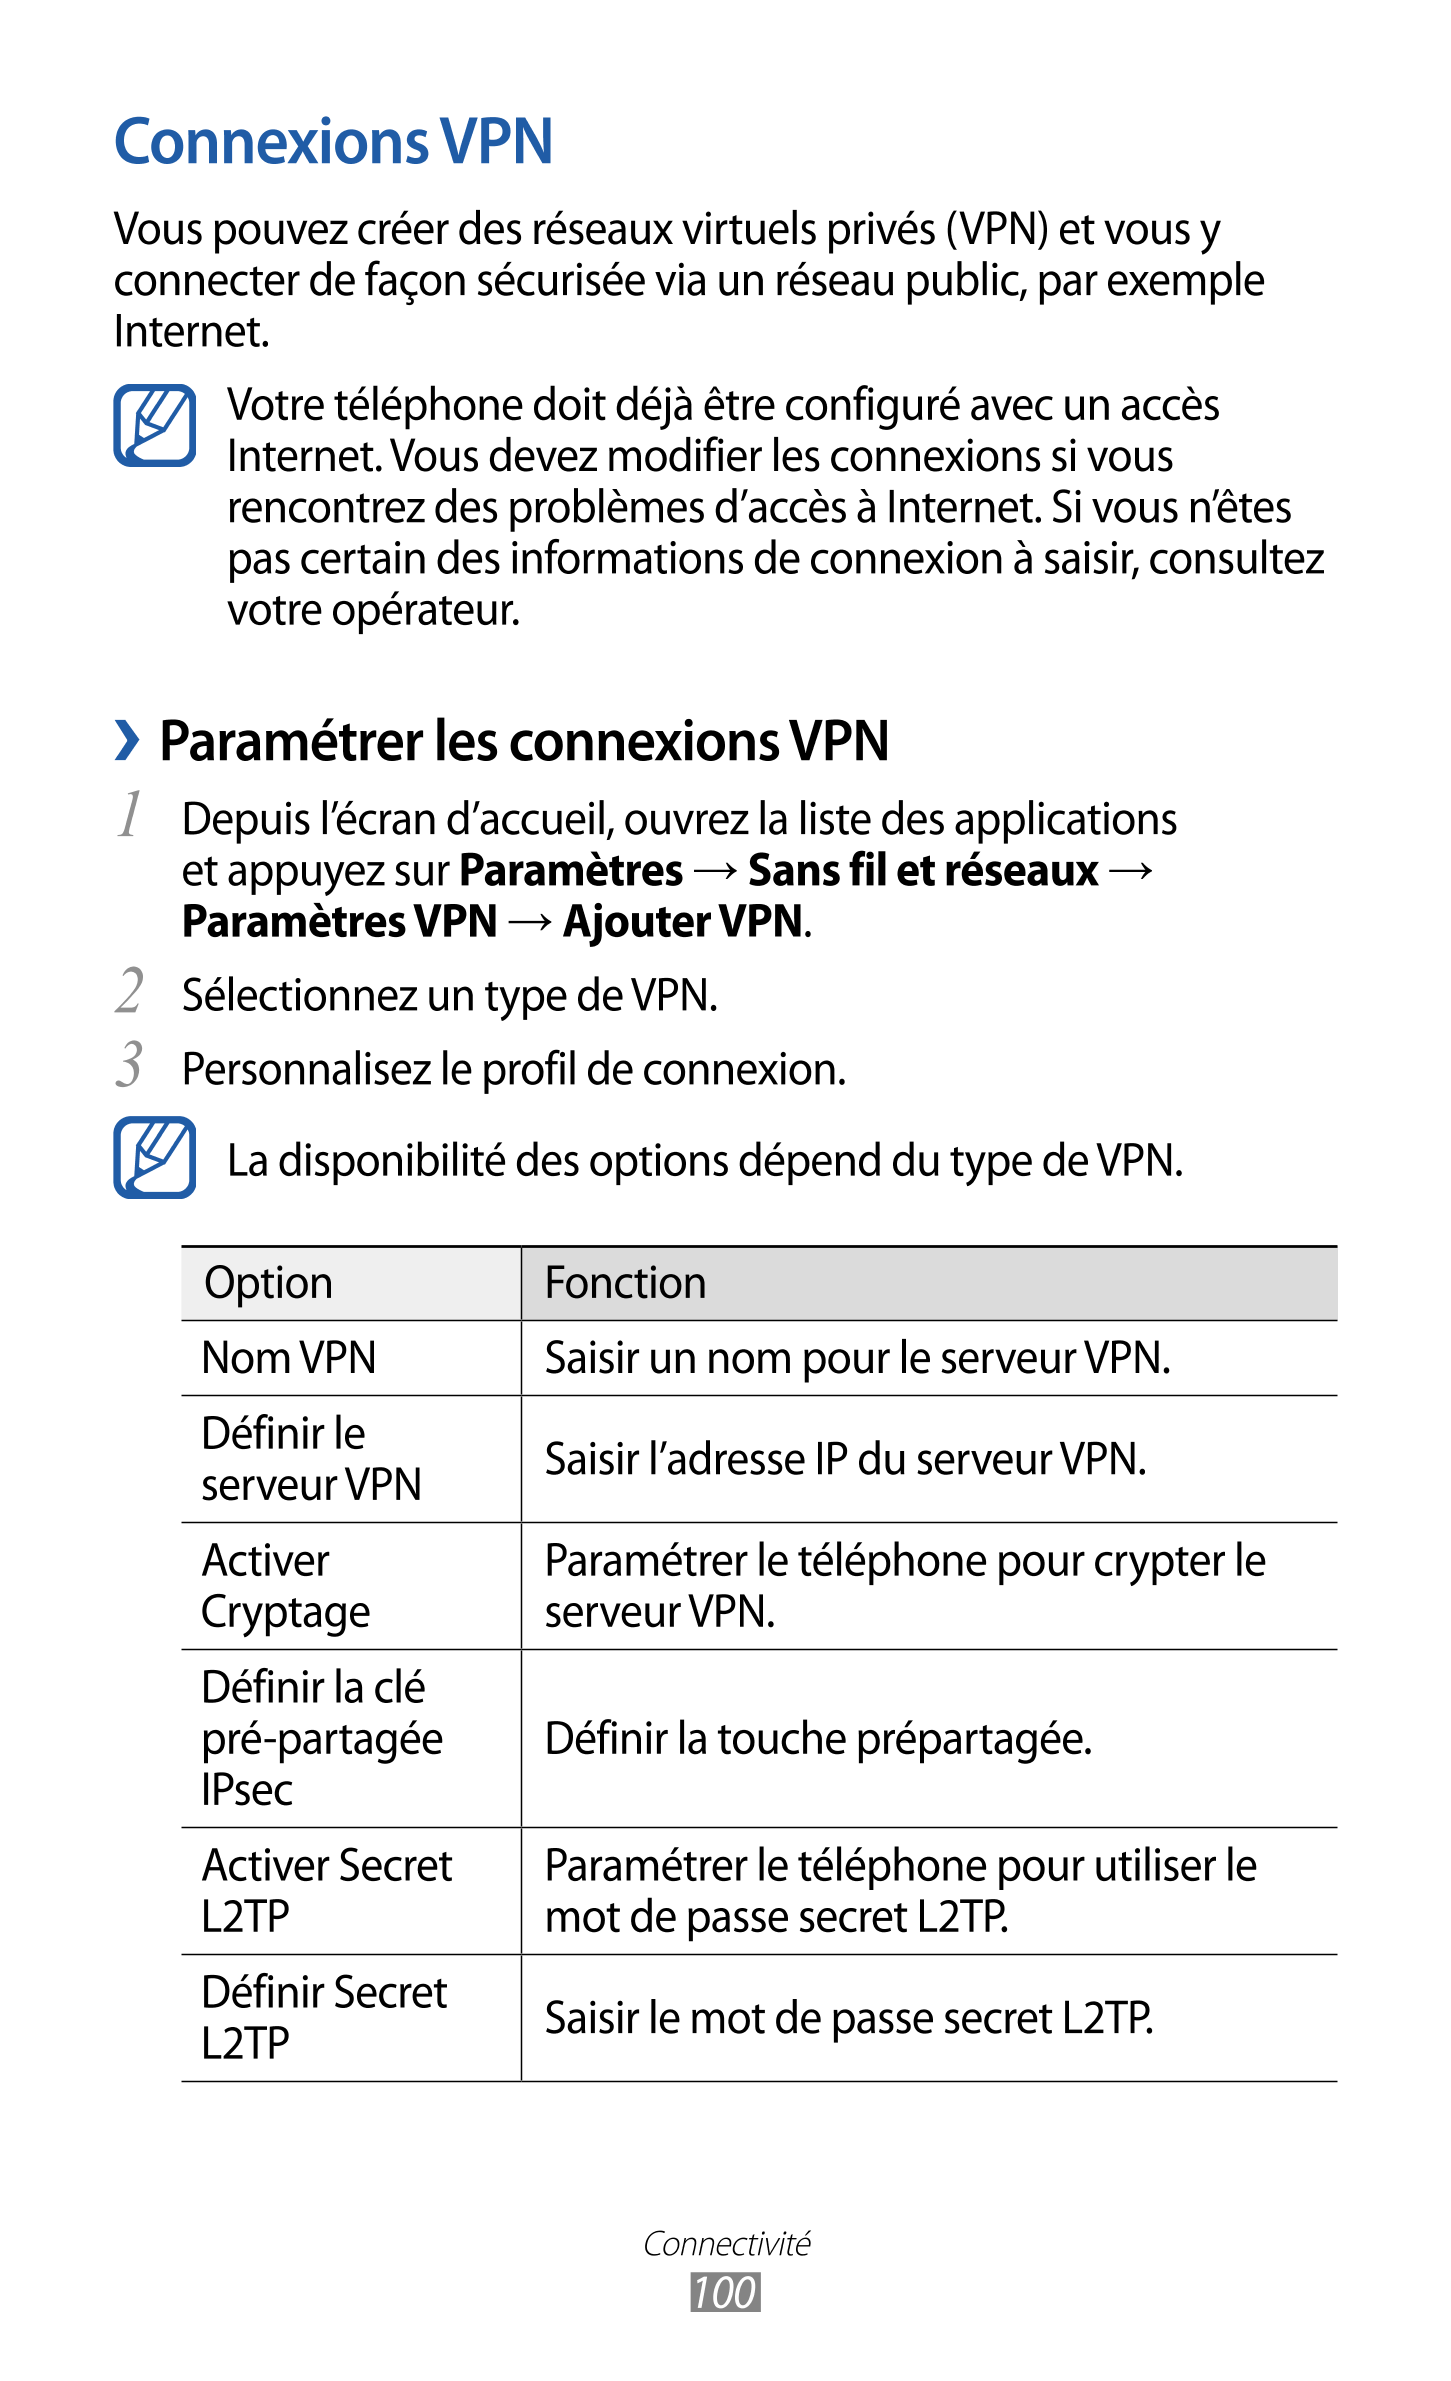 Connexions VPN
Vous pouvez créer des réseaux virtuels privés (VPN) et vous y 
connecter de façon sécurisée via un réseau public,